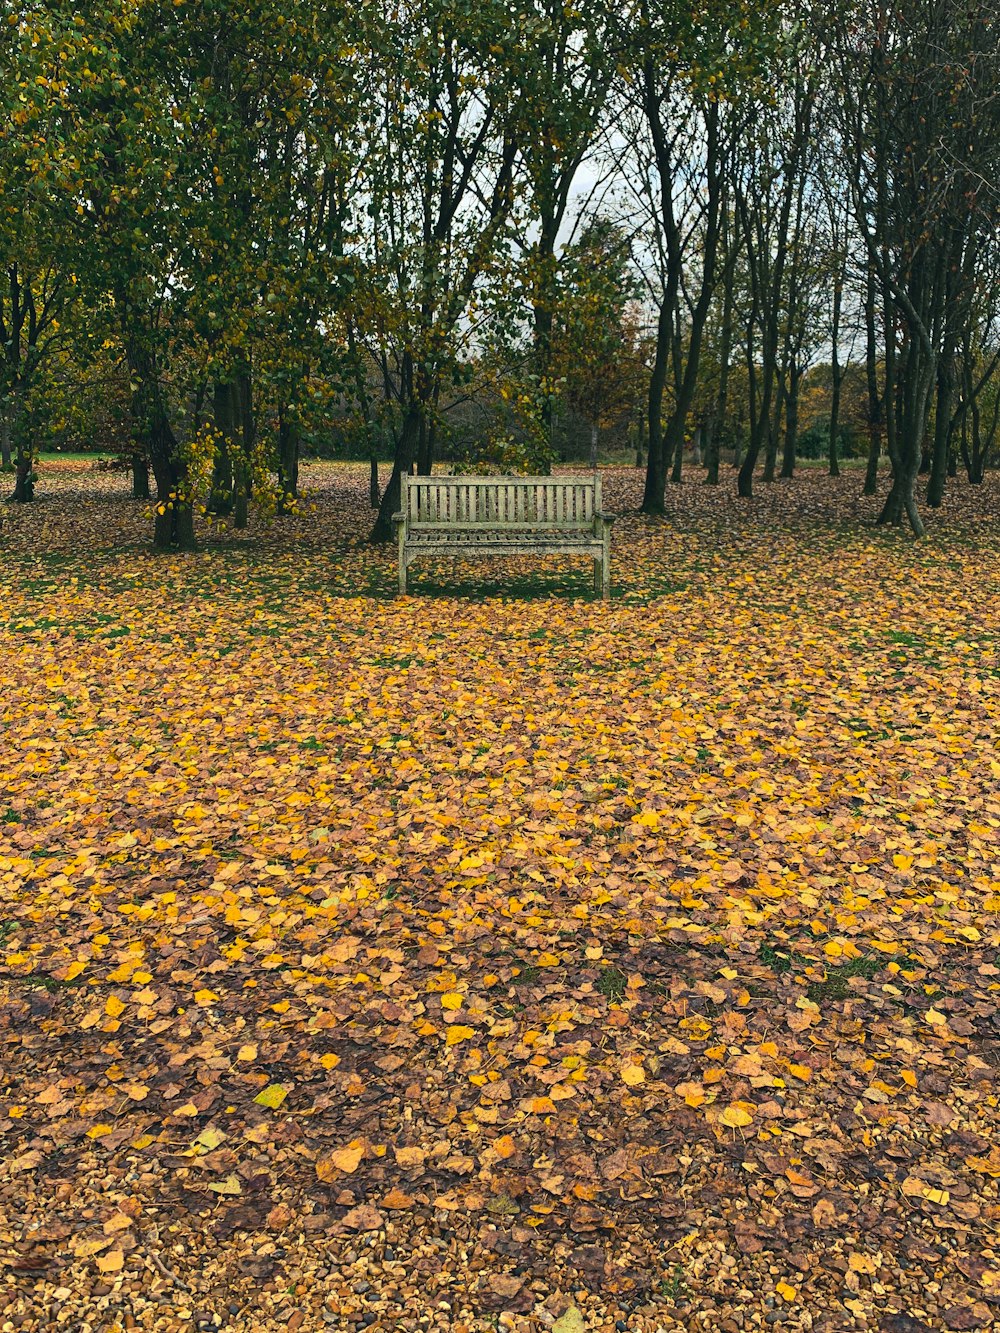 braune Holzbank auf braunen getrockneten Blättern auf dem Boden